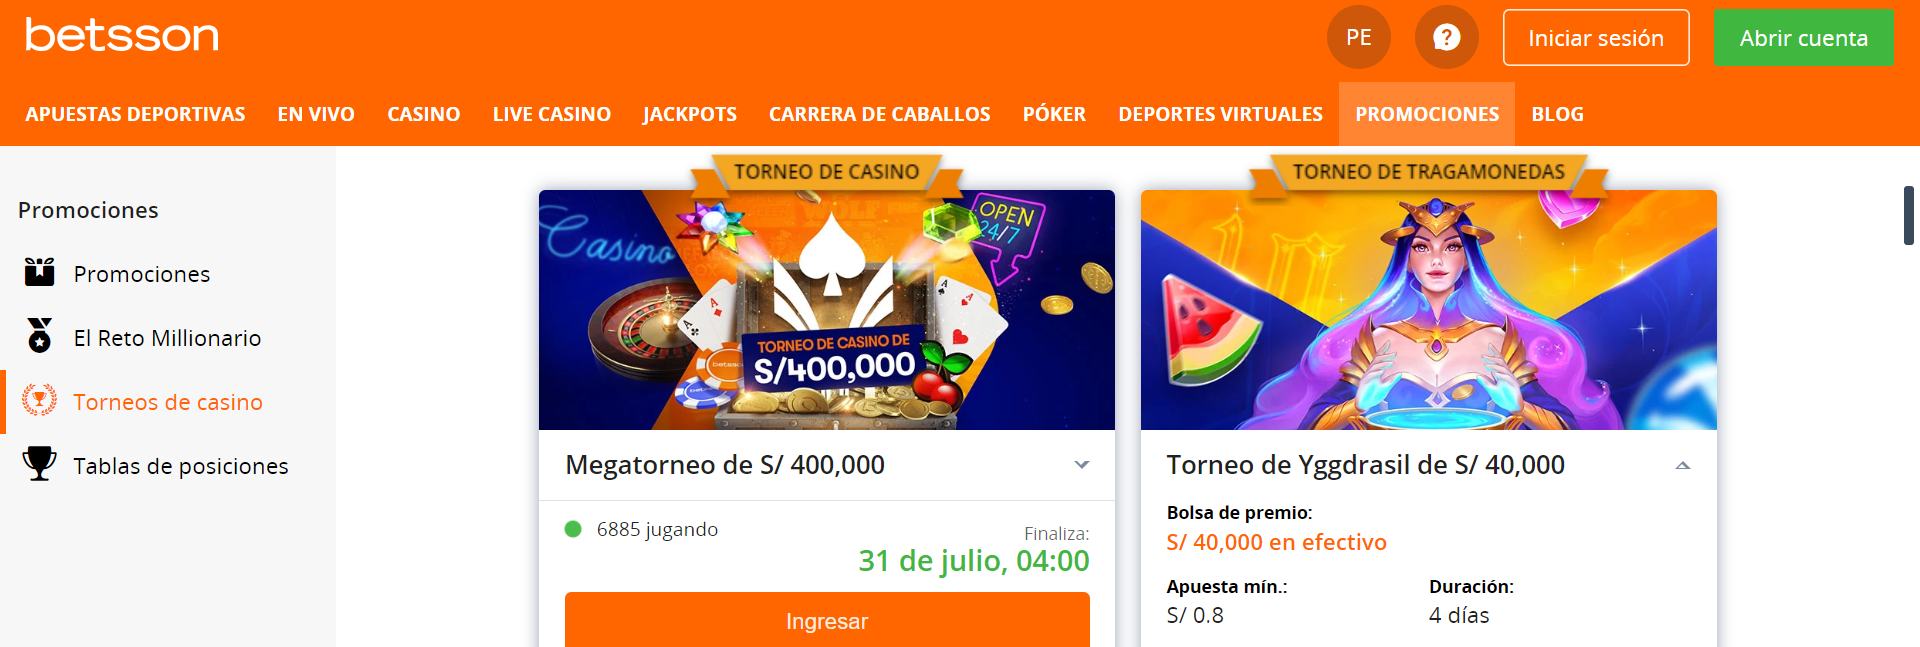 Betsson ofrece Megatorneo de juegos de casino online con grandes premios a repartir